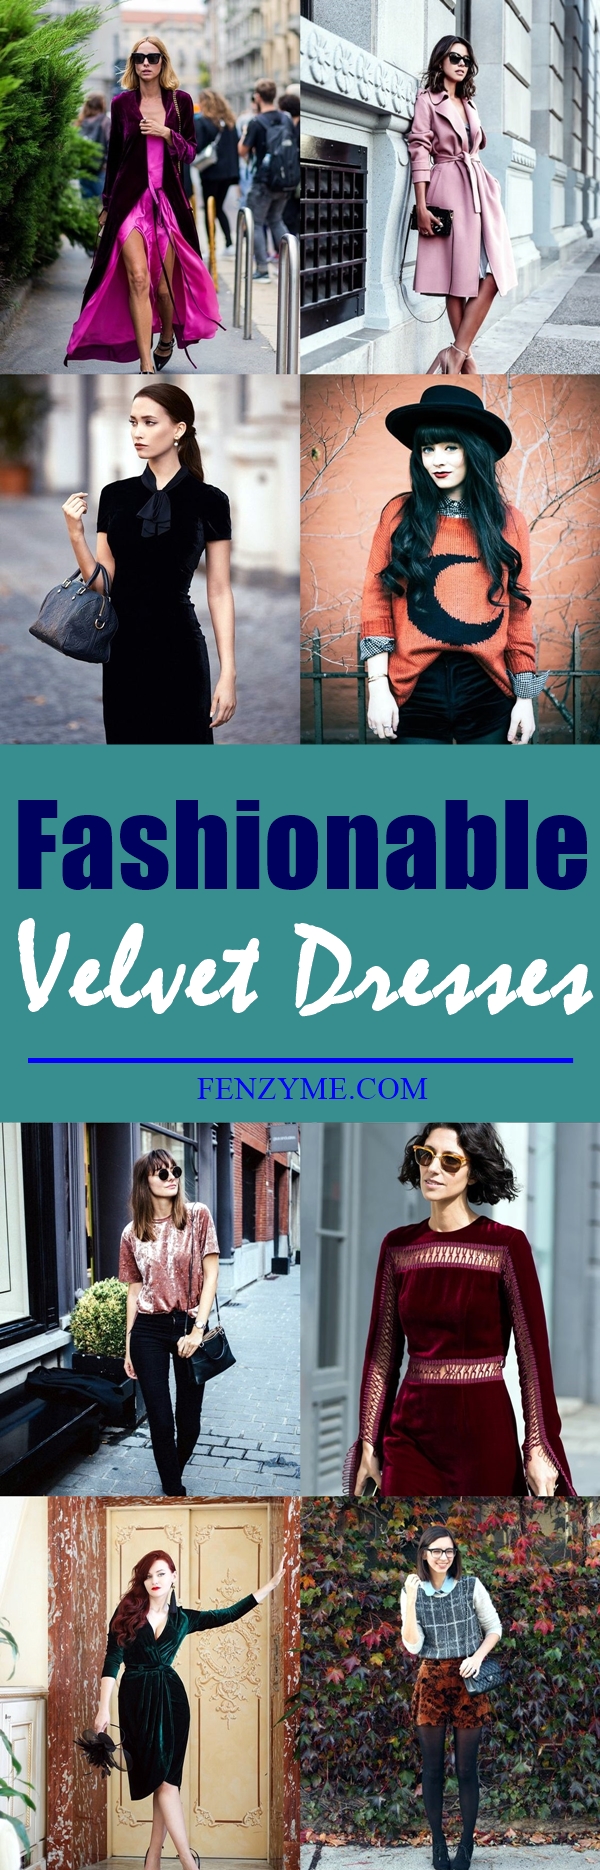 fashionable-velvet-dresses